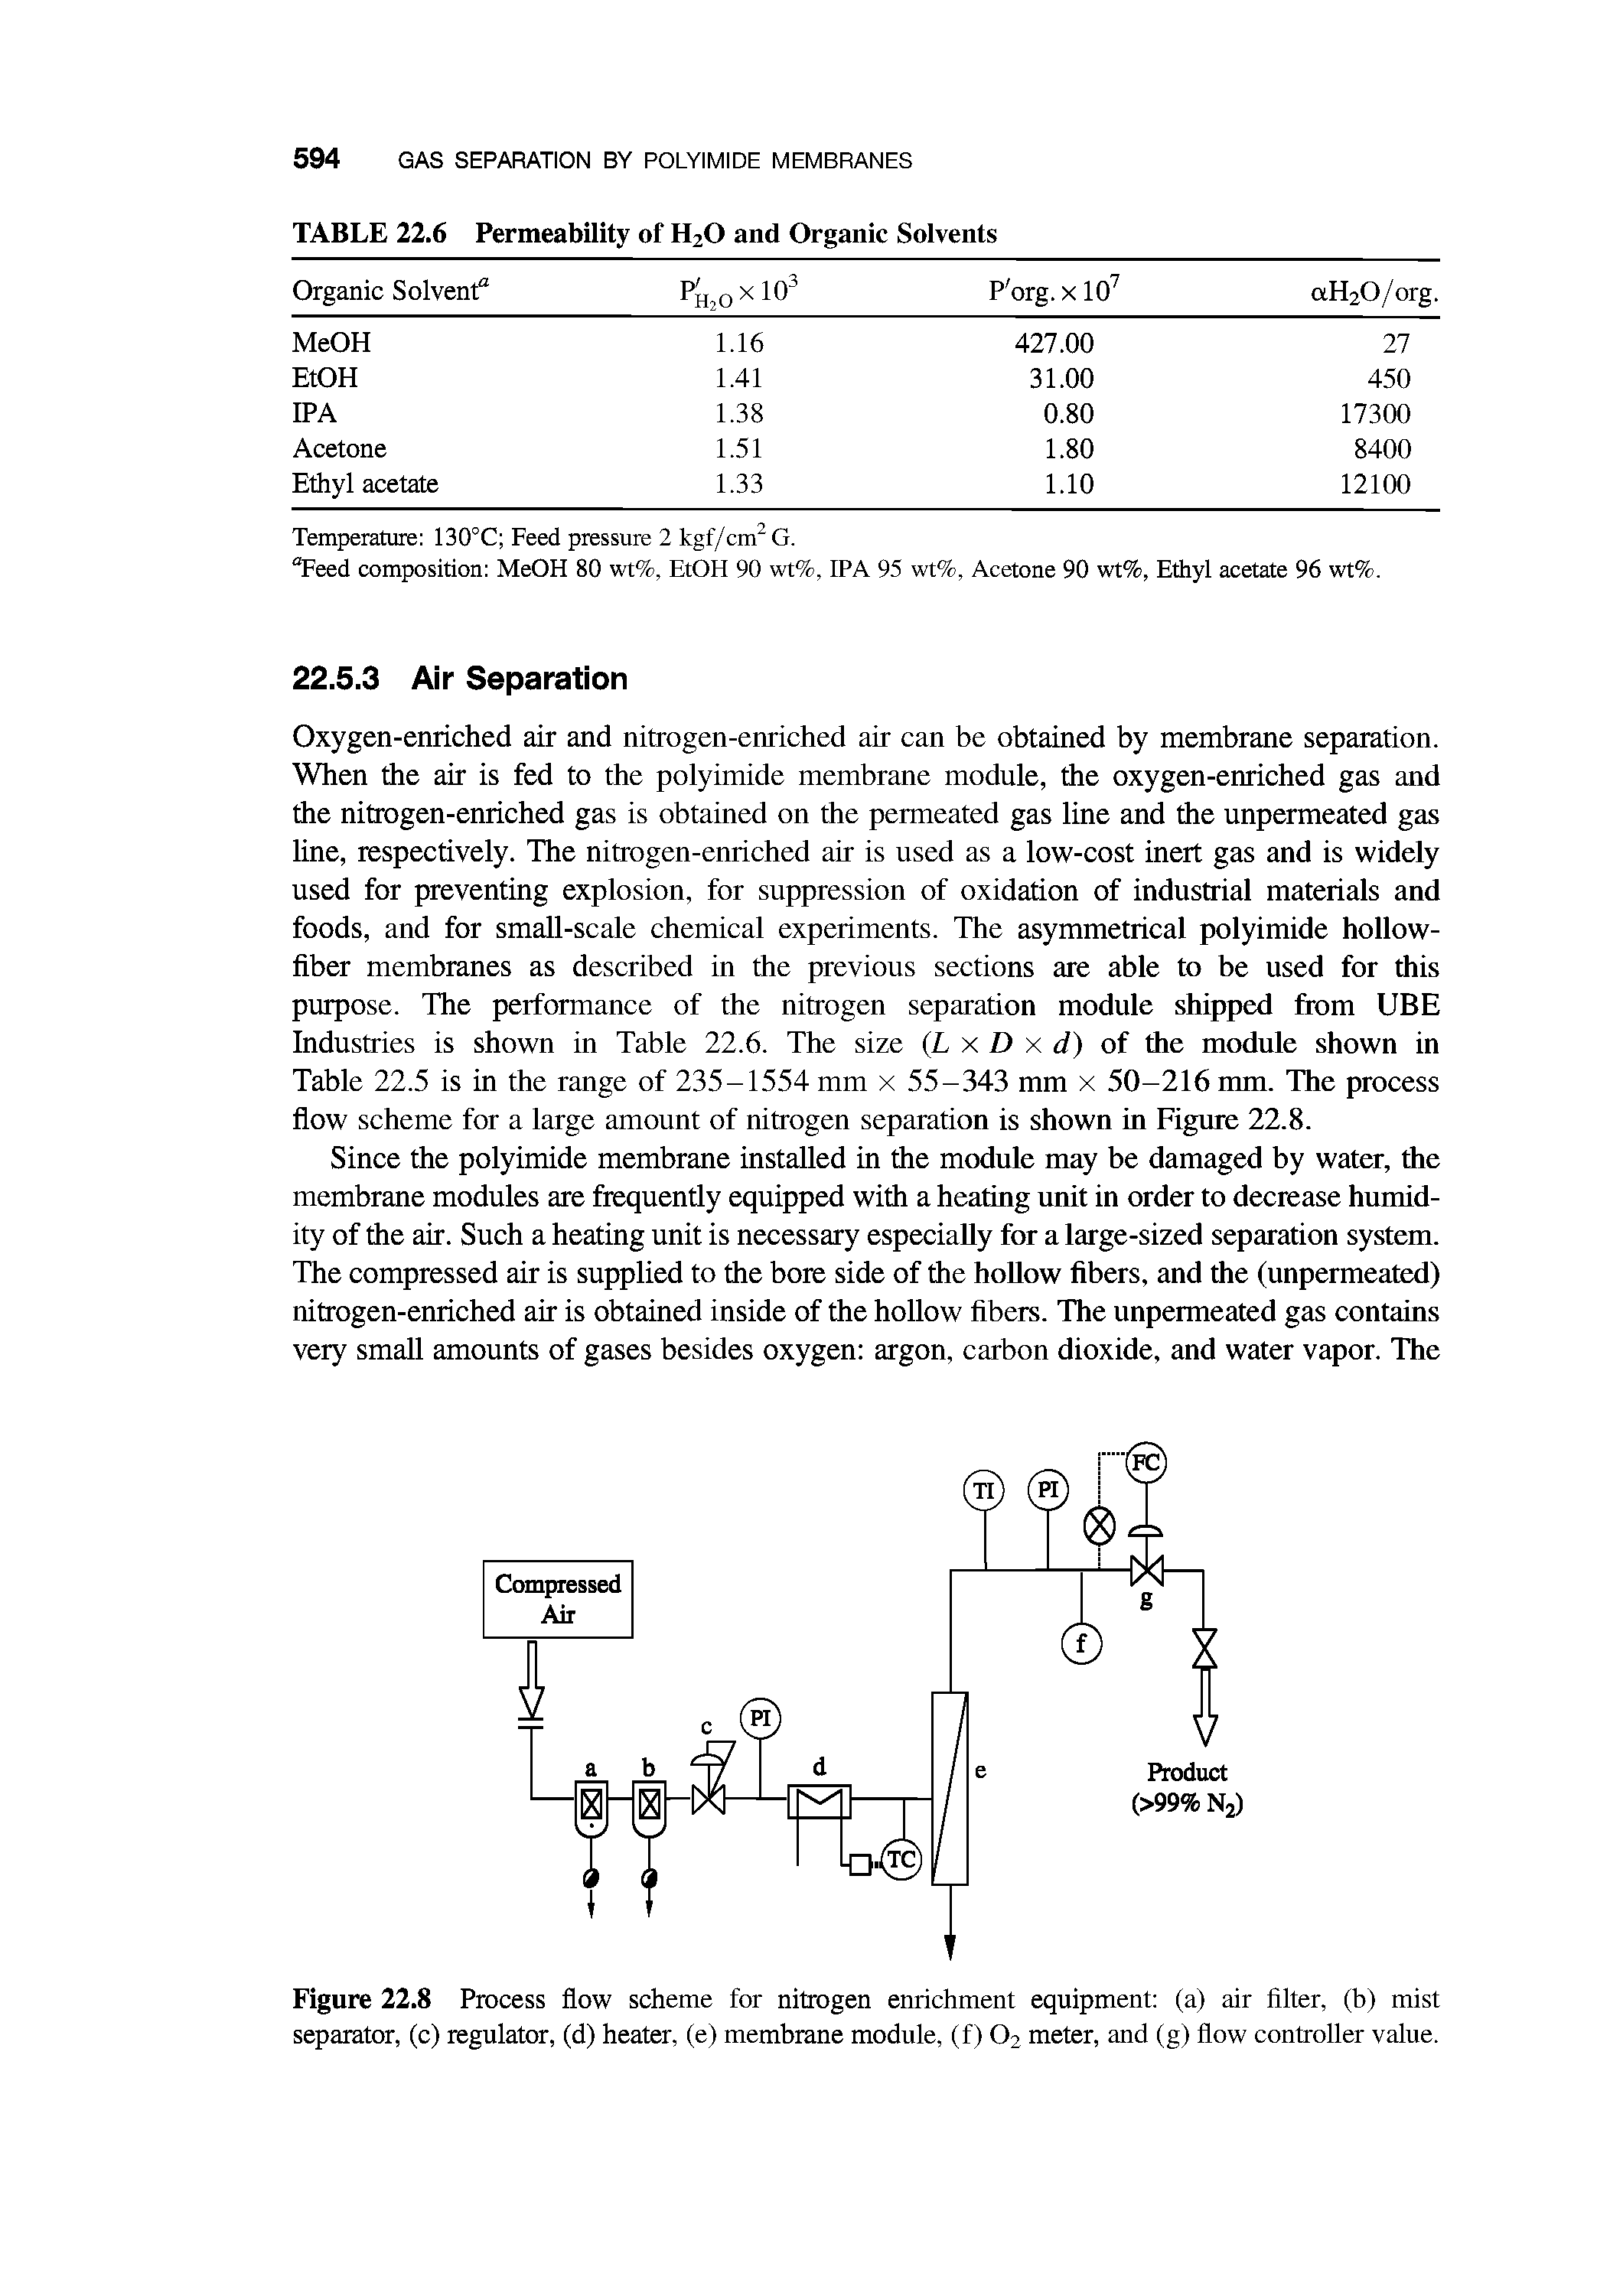 Figure 22.8 Process flow scheme for nitrogen enrichment equipment (a) air filter, (b) mist separator, (c) regulator, (d) heater, (e) membrane module, (f) O2 meter, and (g) flow controller value.